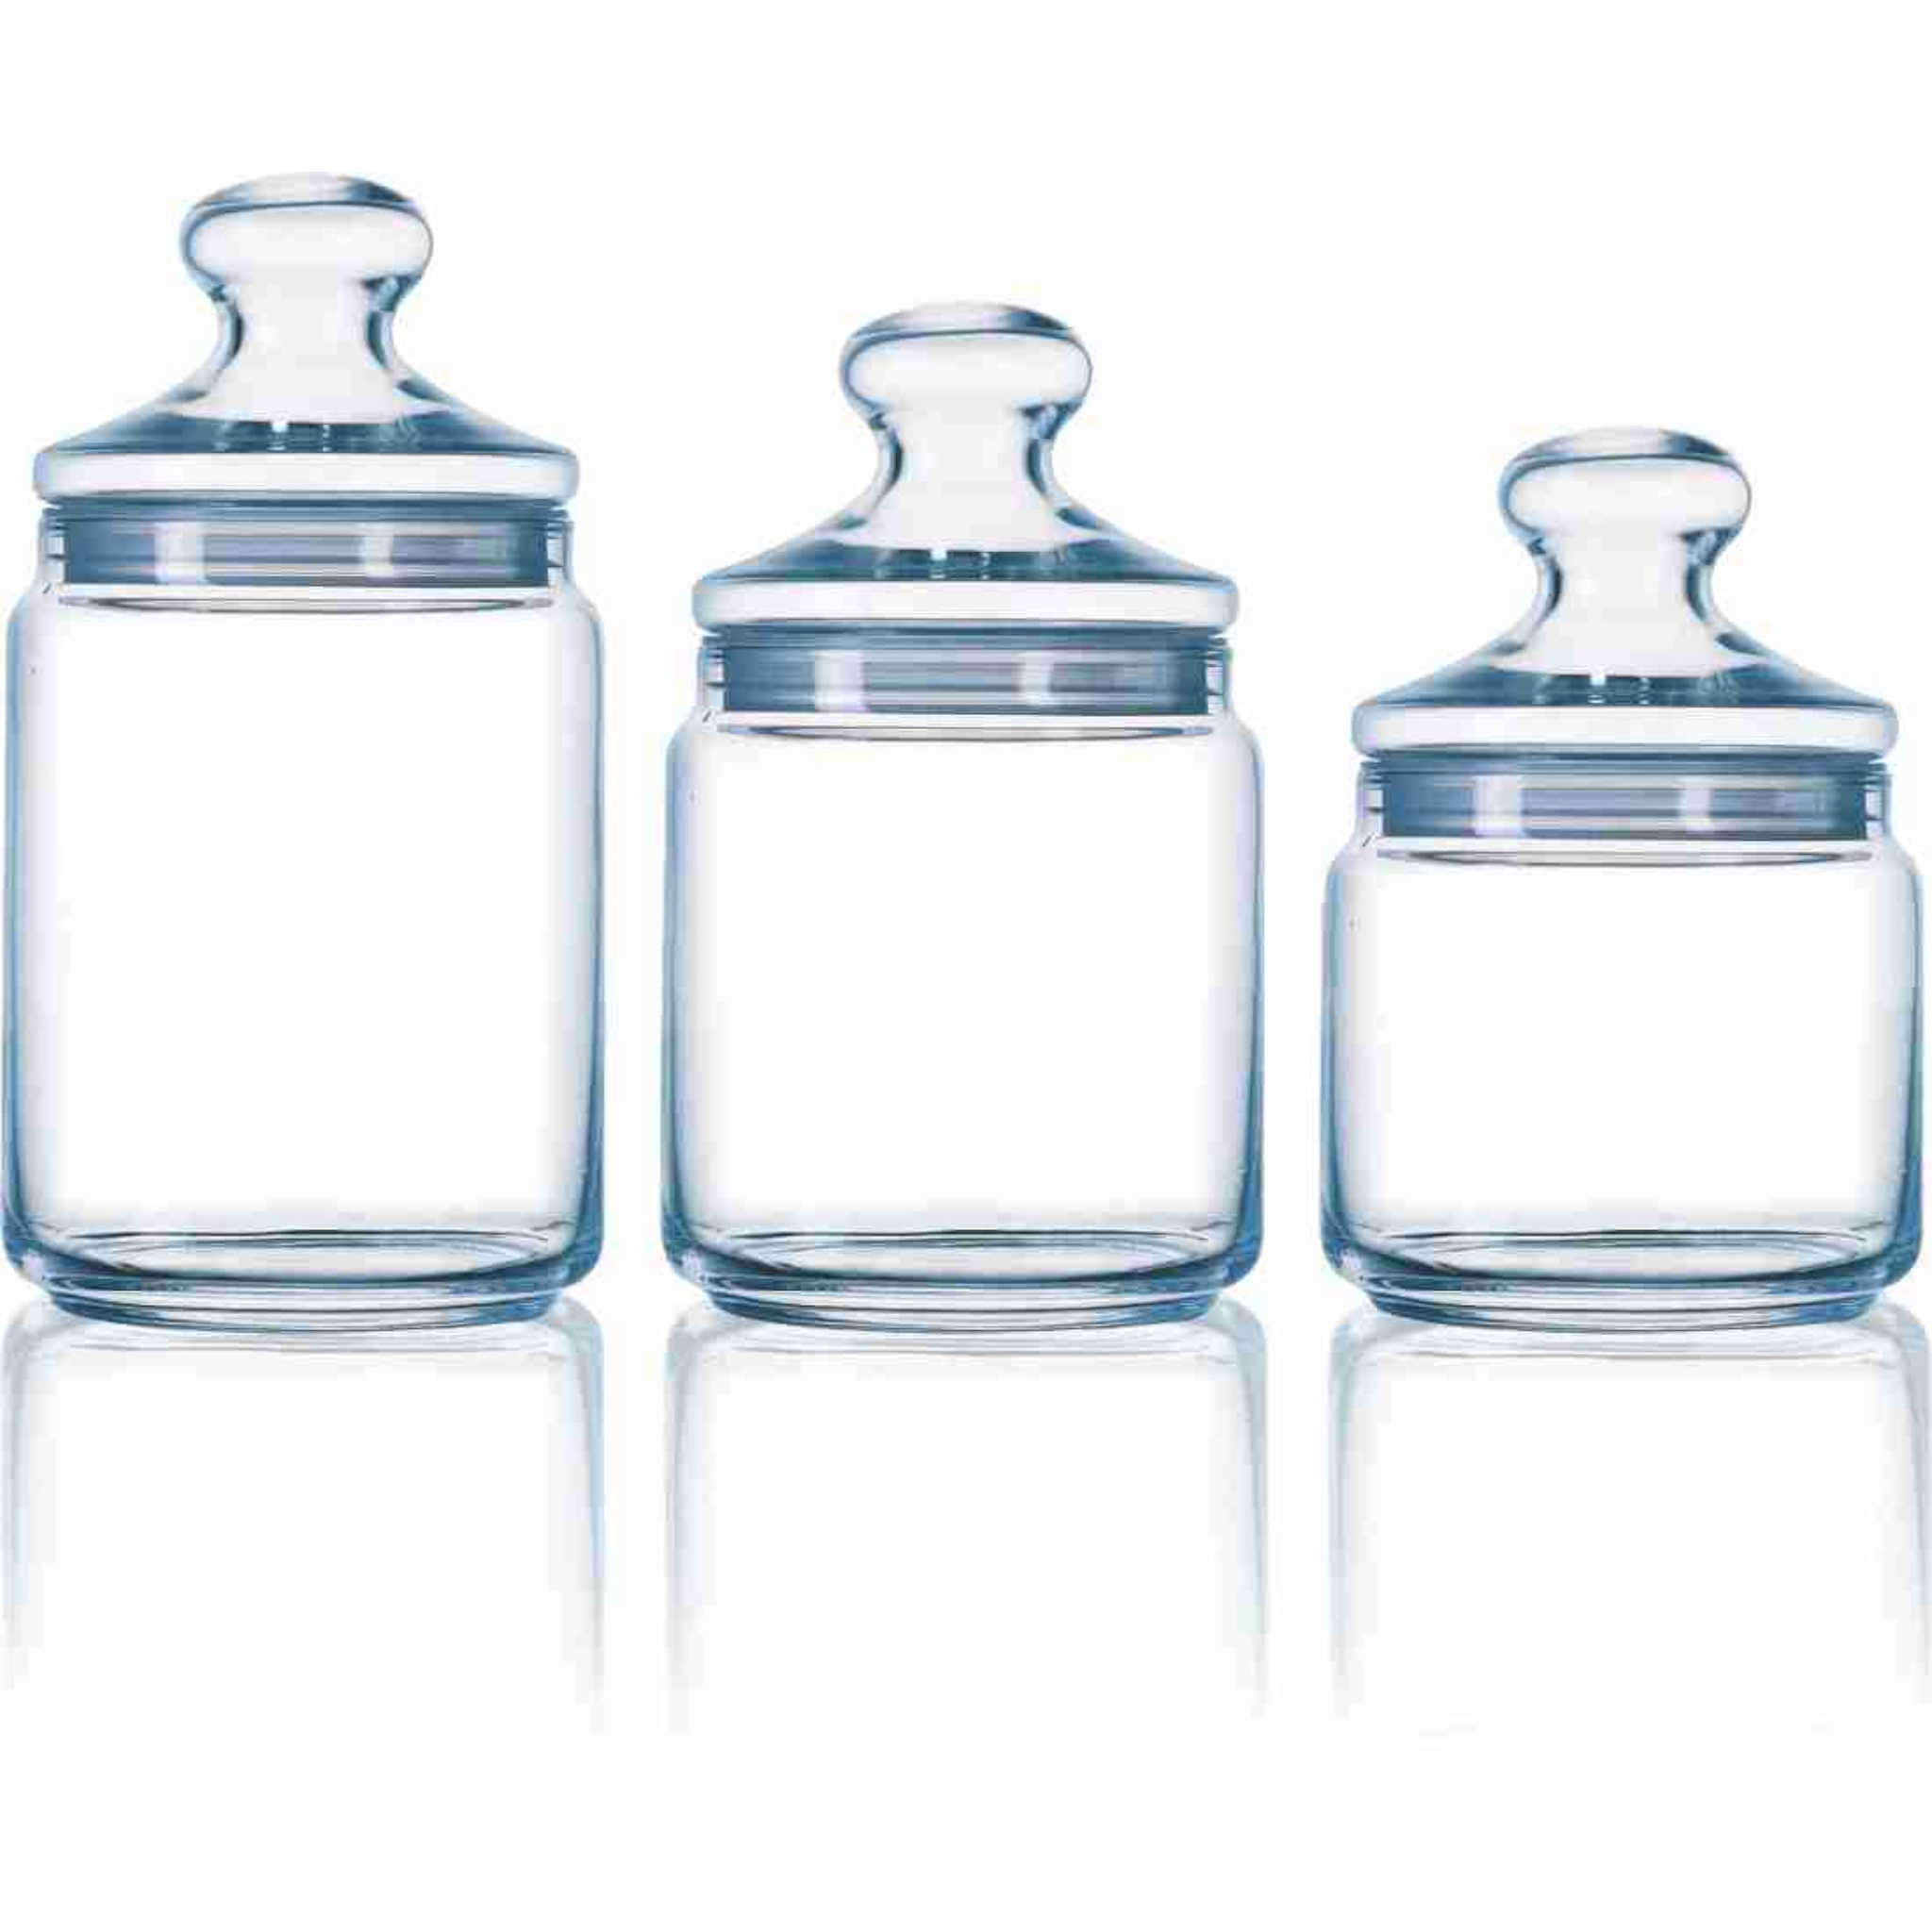 Luminarc Pot Club Glass Storage Jar 750ml 38122